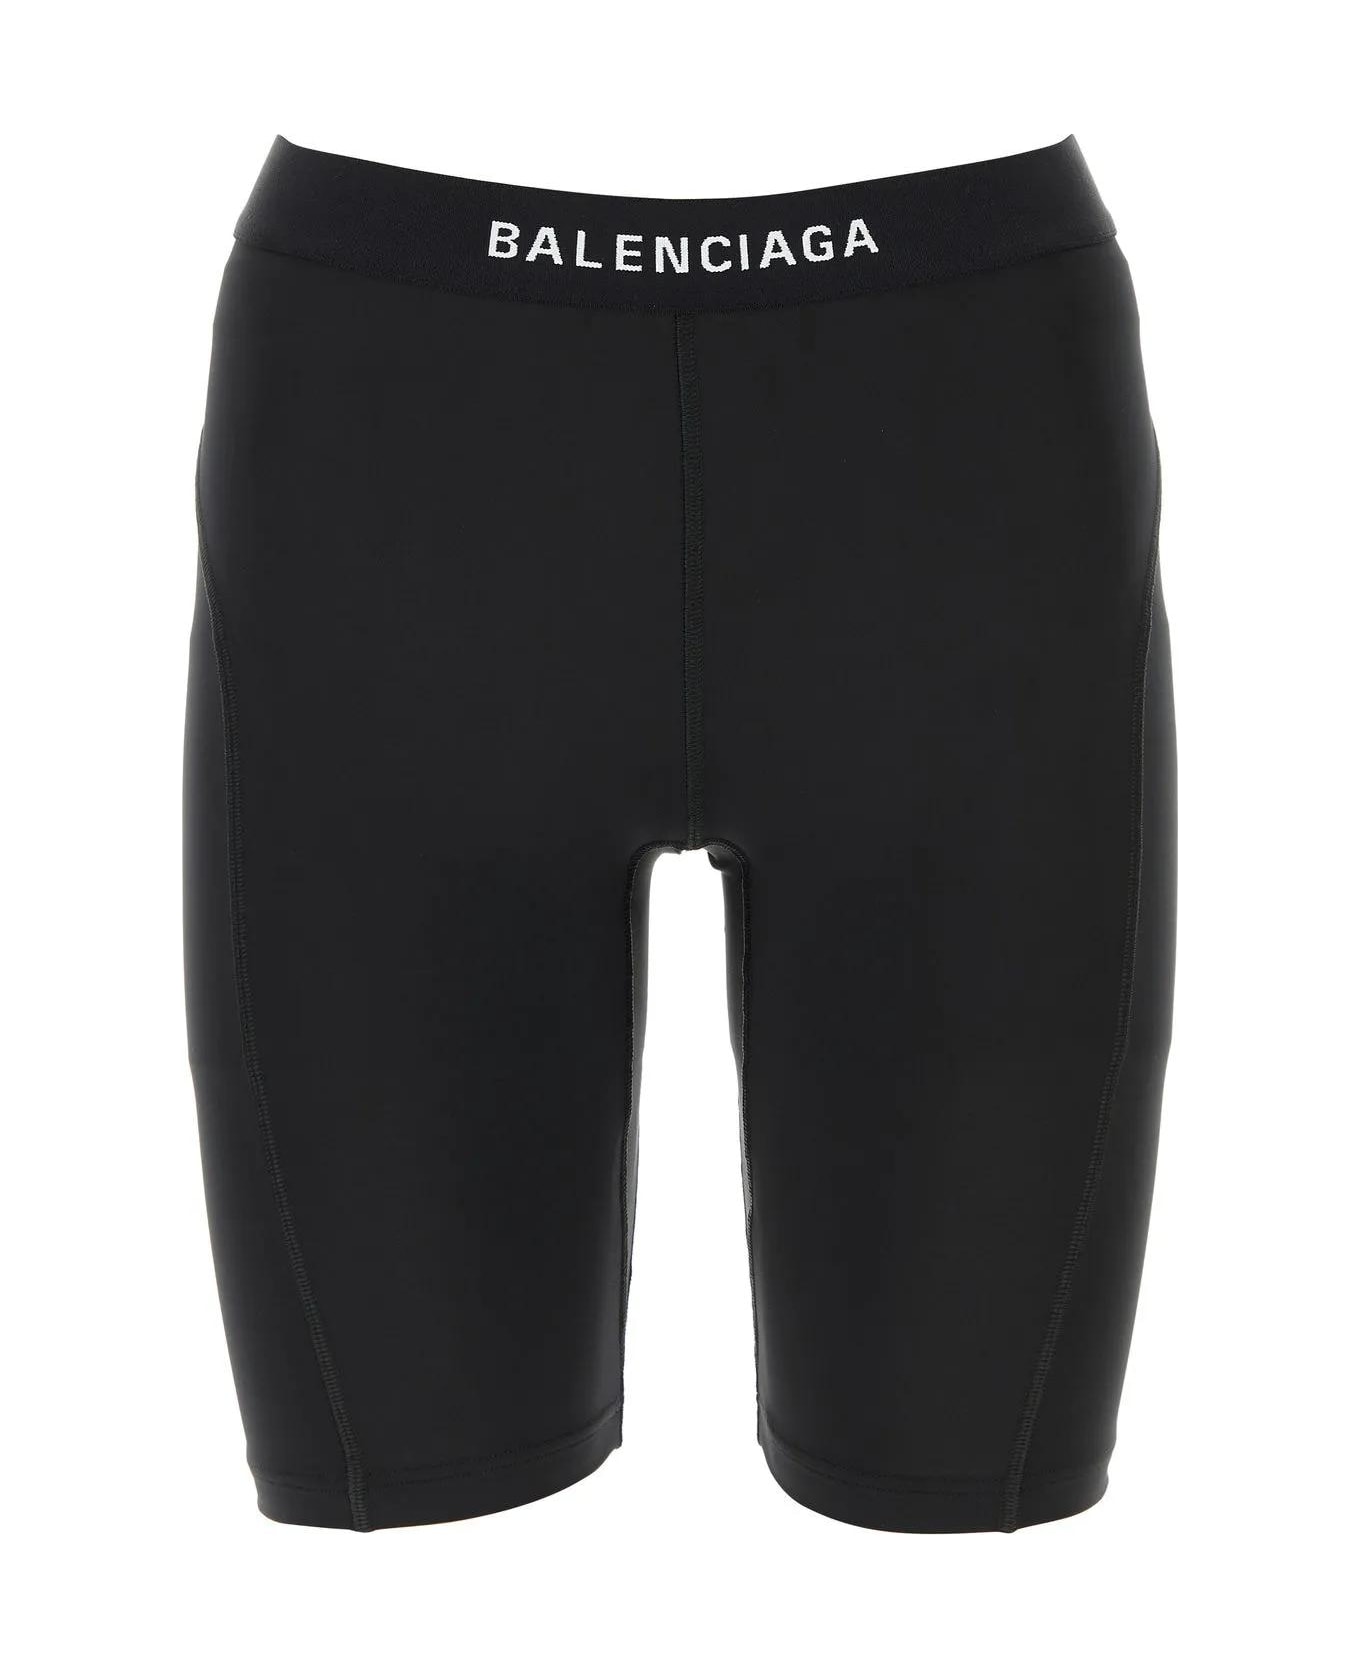 Balenciaga Athletic Cycling Shorts - BLACK